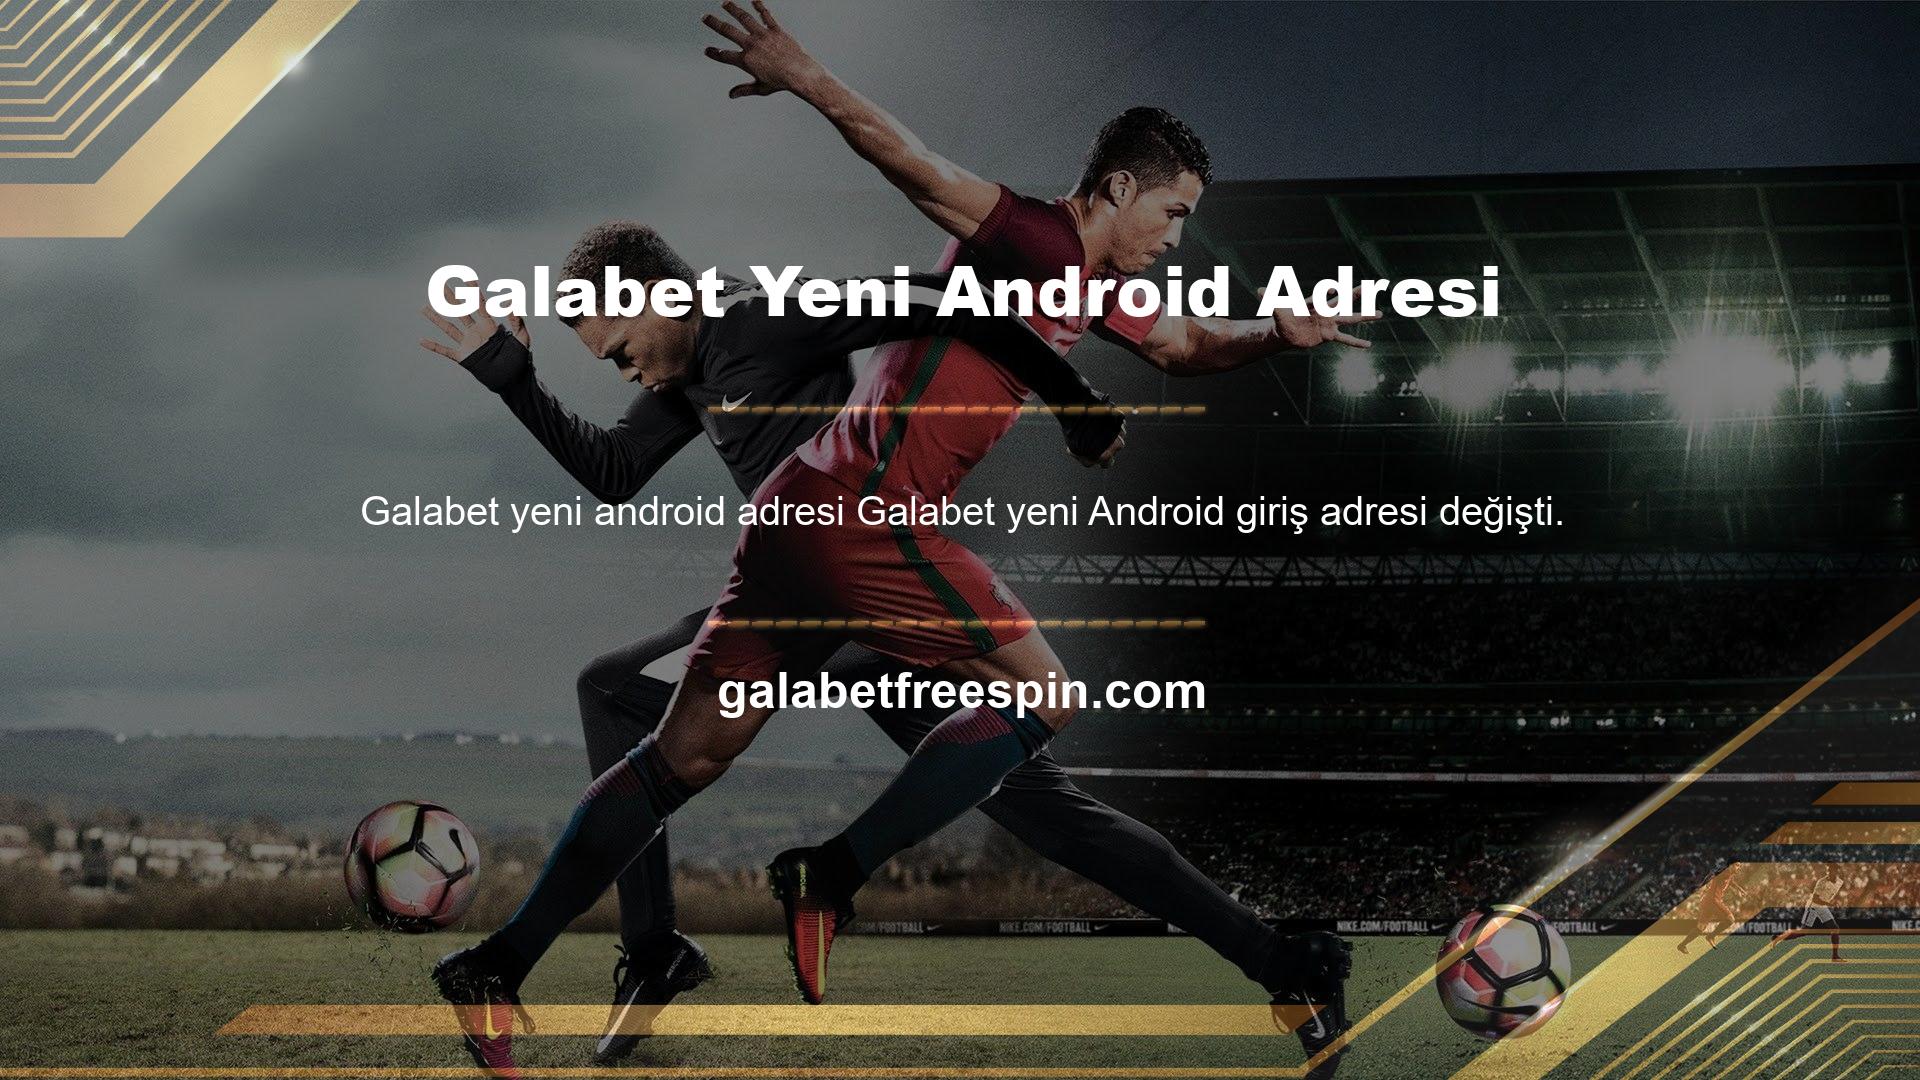 Bu site, Galabet yeni Android adresi olan yeni adresi değiştirmeye devam ediyor